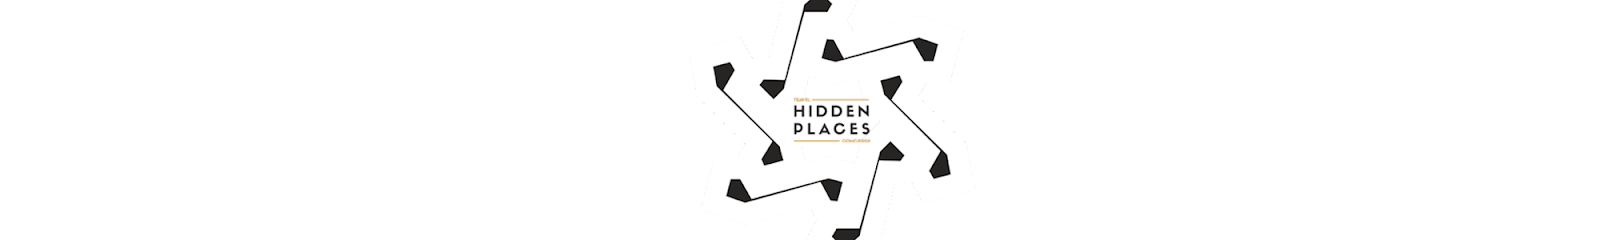 Información y opiniones sobre Travel Hidden Places – Concierge, Events – Branding & Lifestyle de Alaior